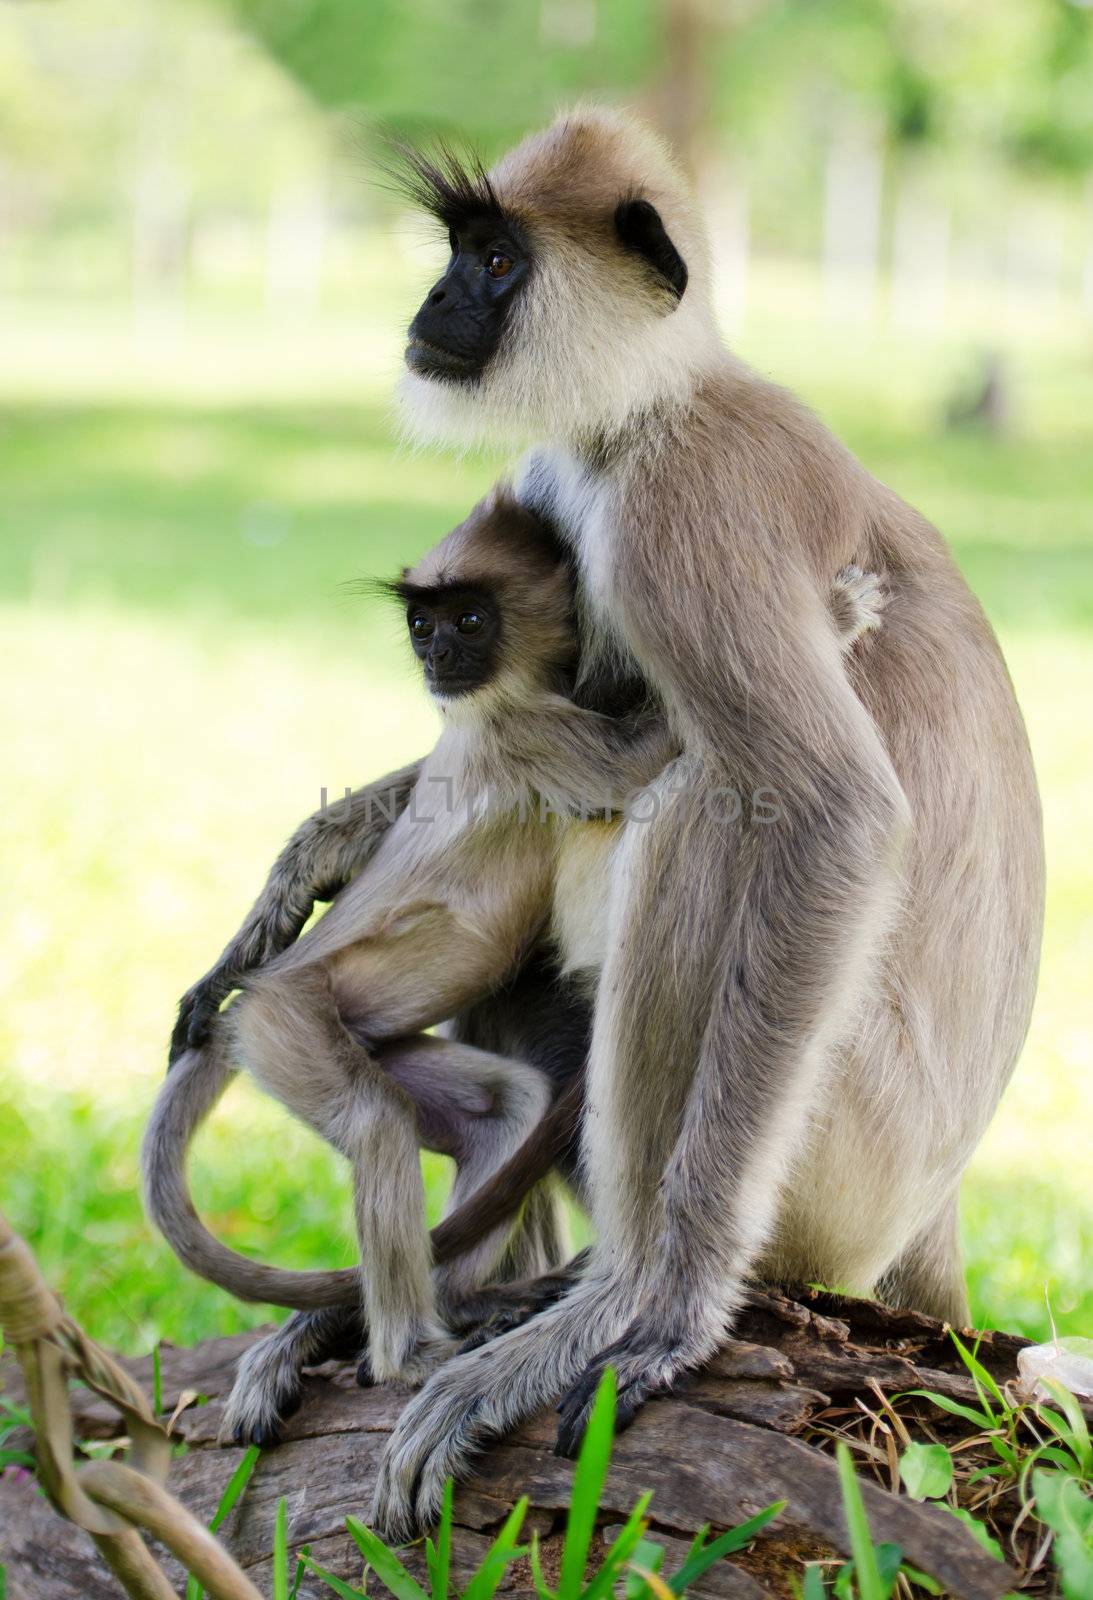 Wild monkey with baby by iryna_rasko